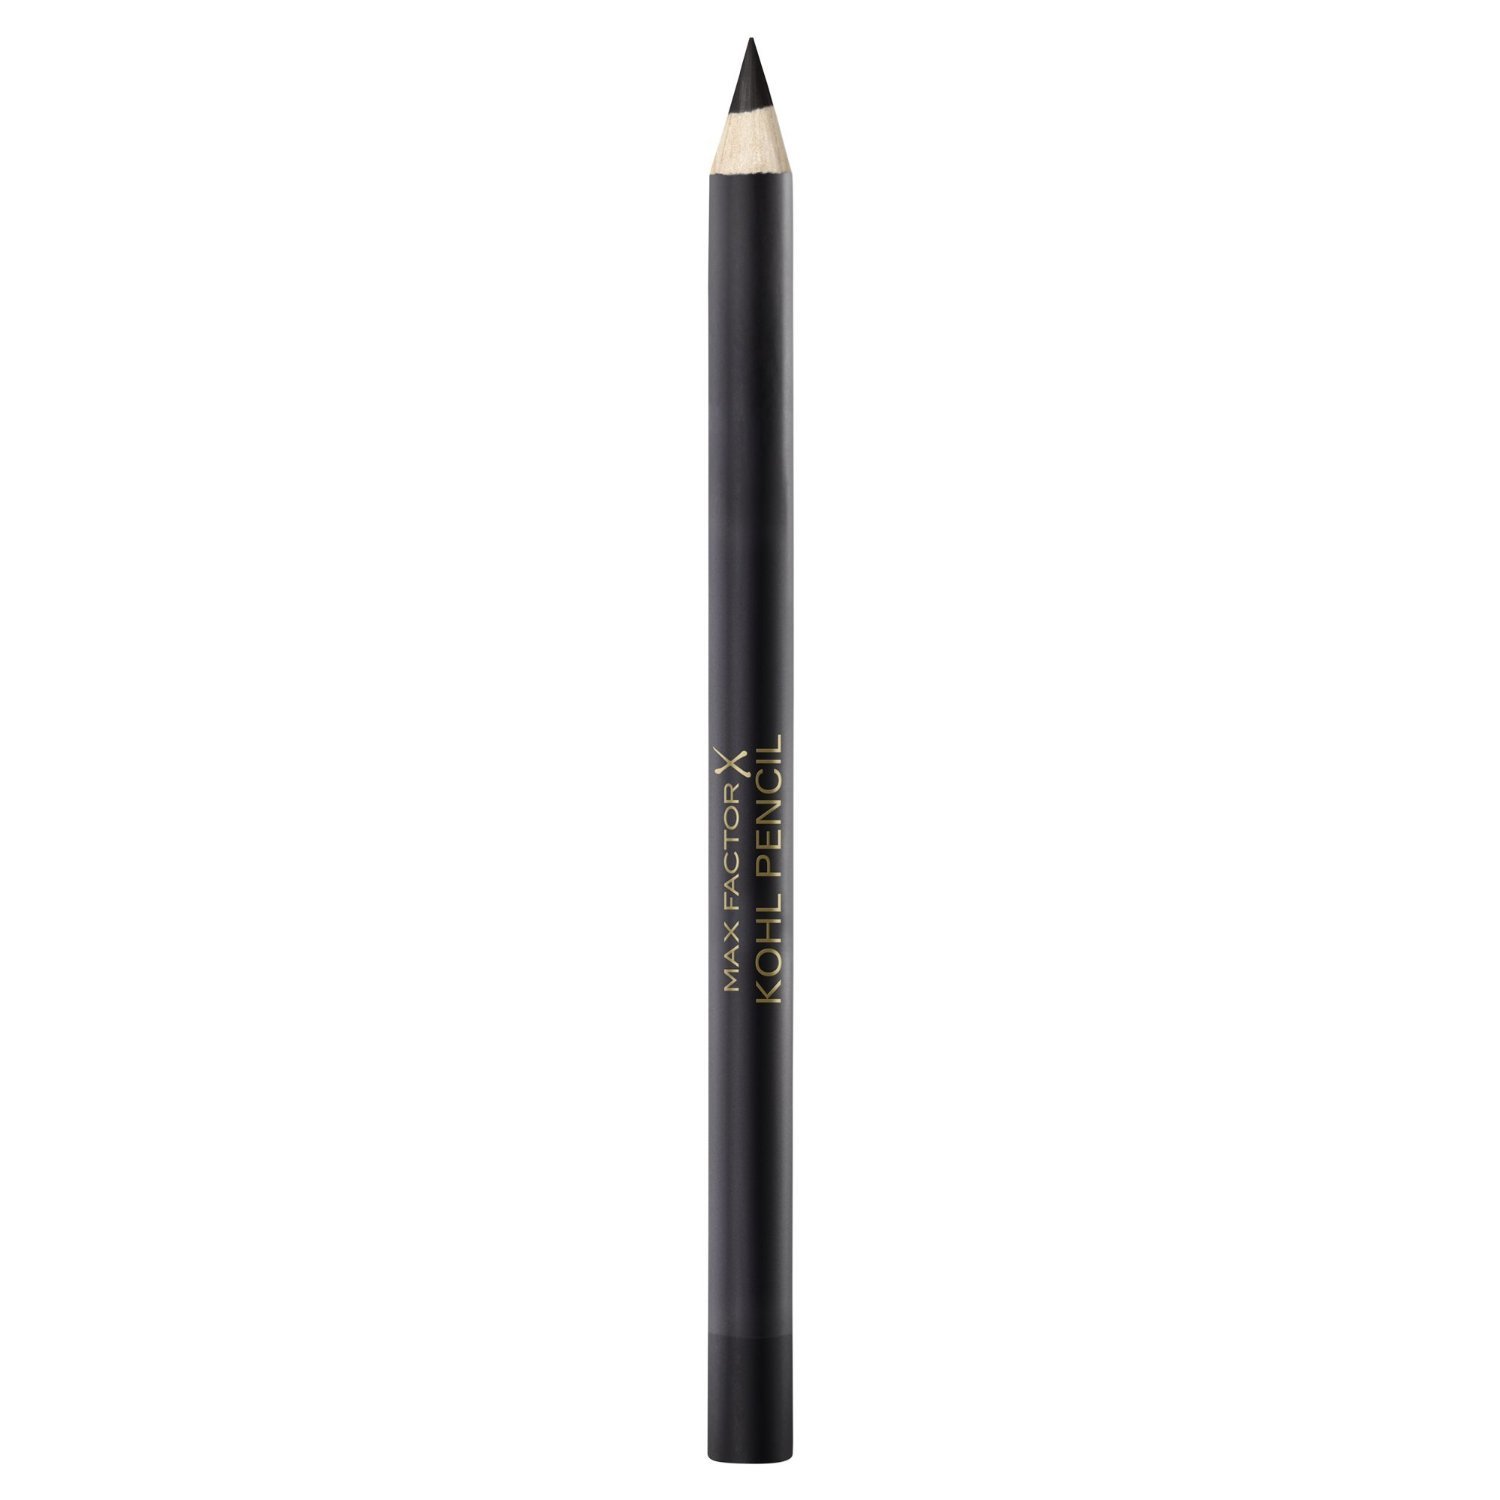 Akių kontūro pieštukas Max Factor Kohl pencil 3.5 g, 20 Black